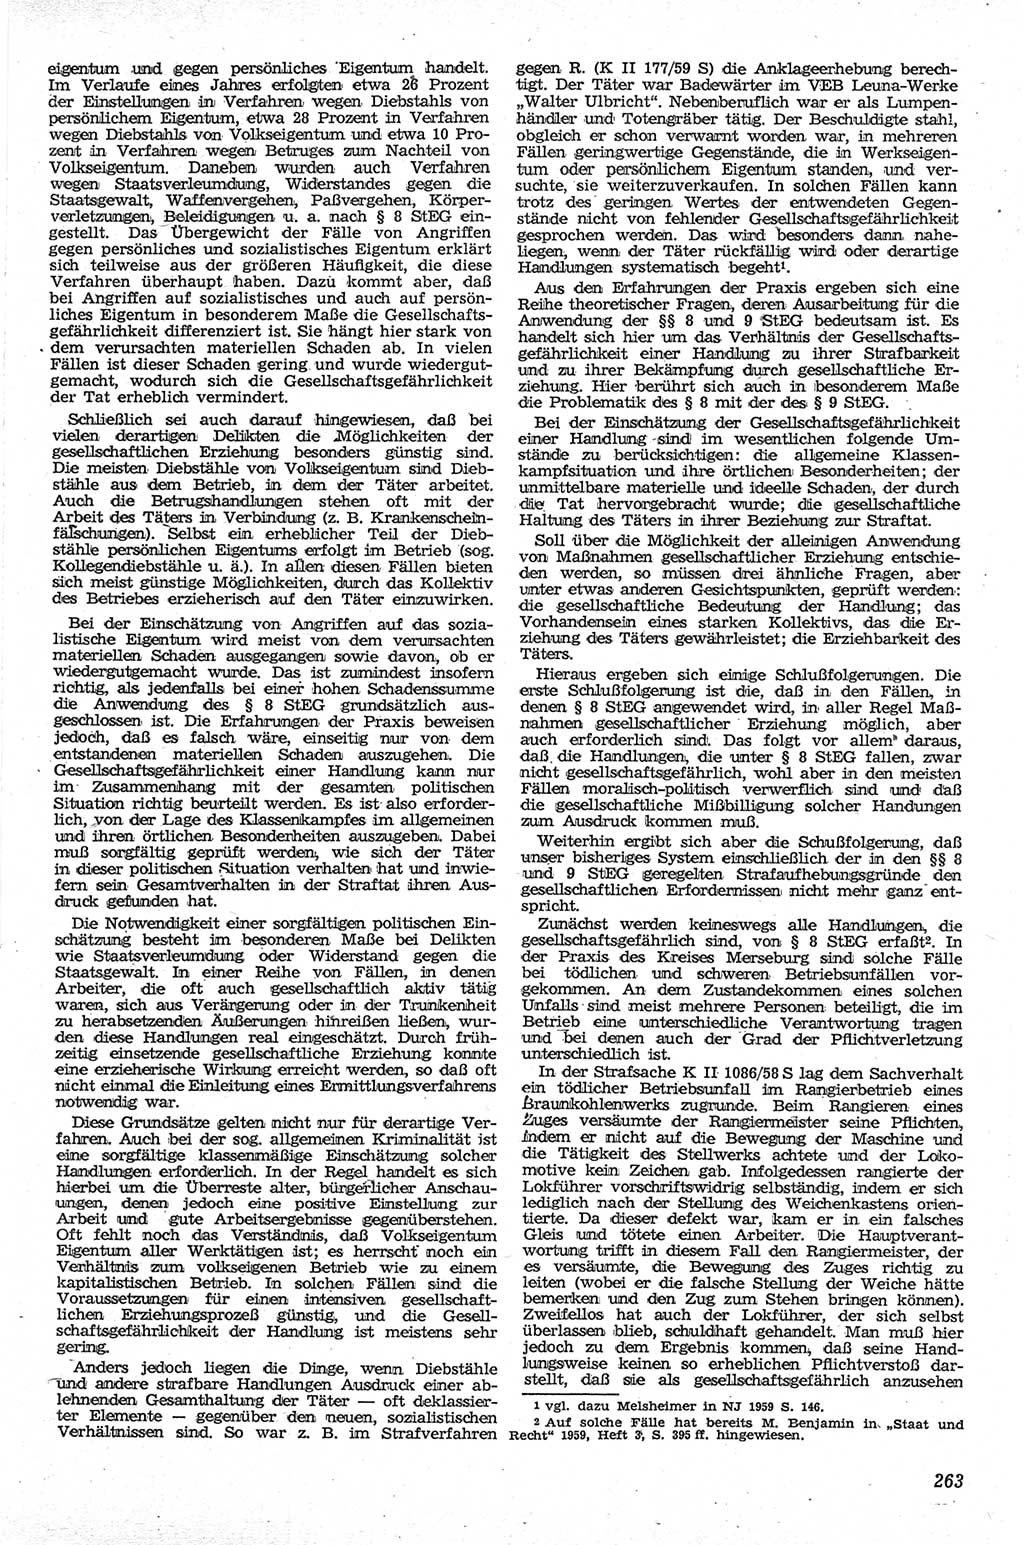 Neue Justiz (NJ), Zeitschrift für Recht und Rechtswissenschaft [Deutsche Demokratische Republik (DDR)], 13. Jahrgang 1959, Seite 263 (NJ DDR 1959, S. 263)